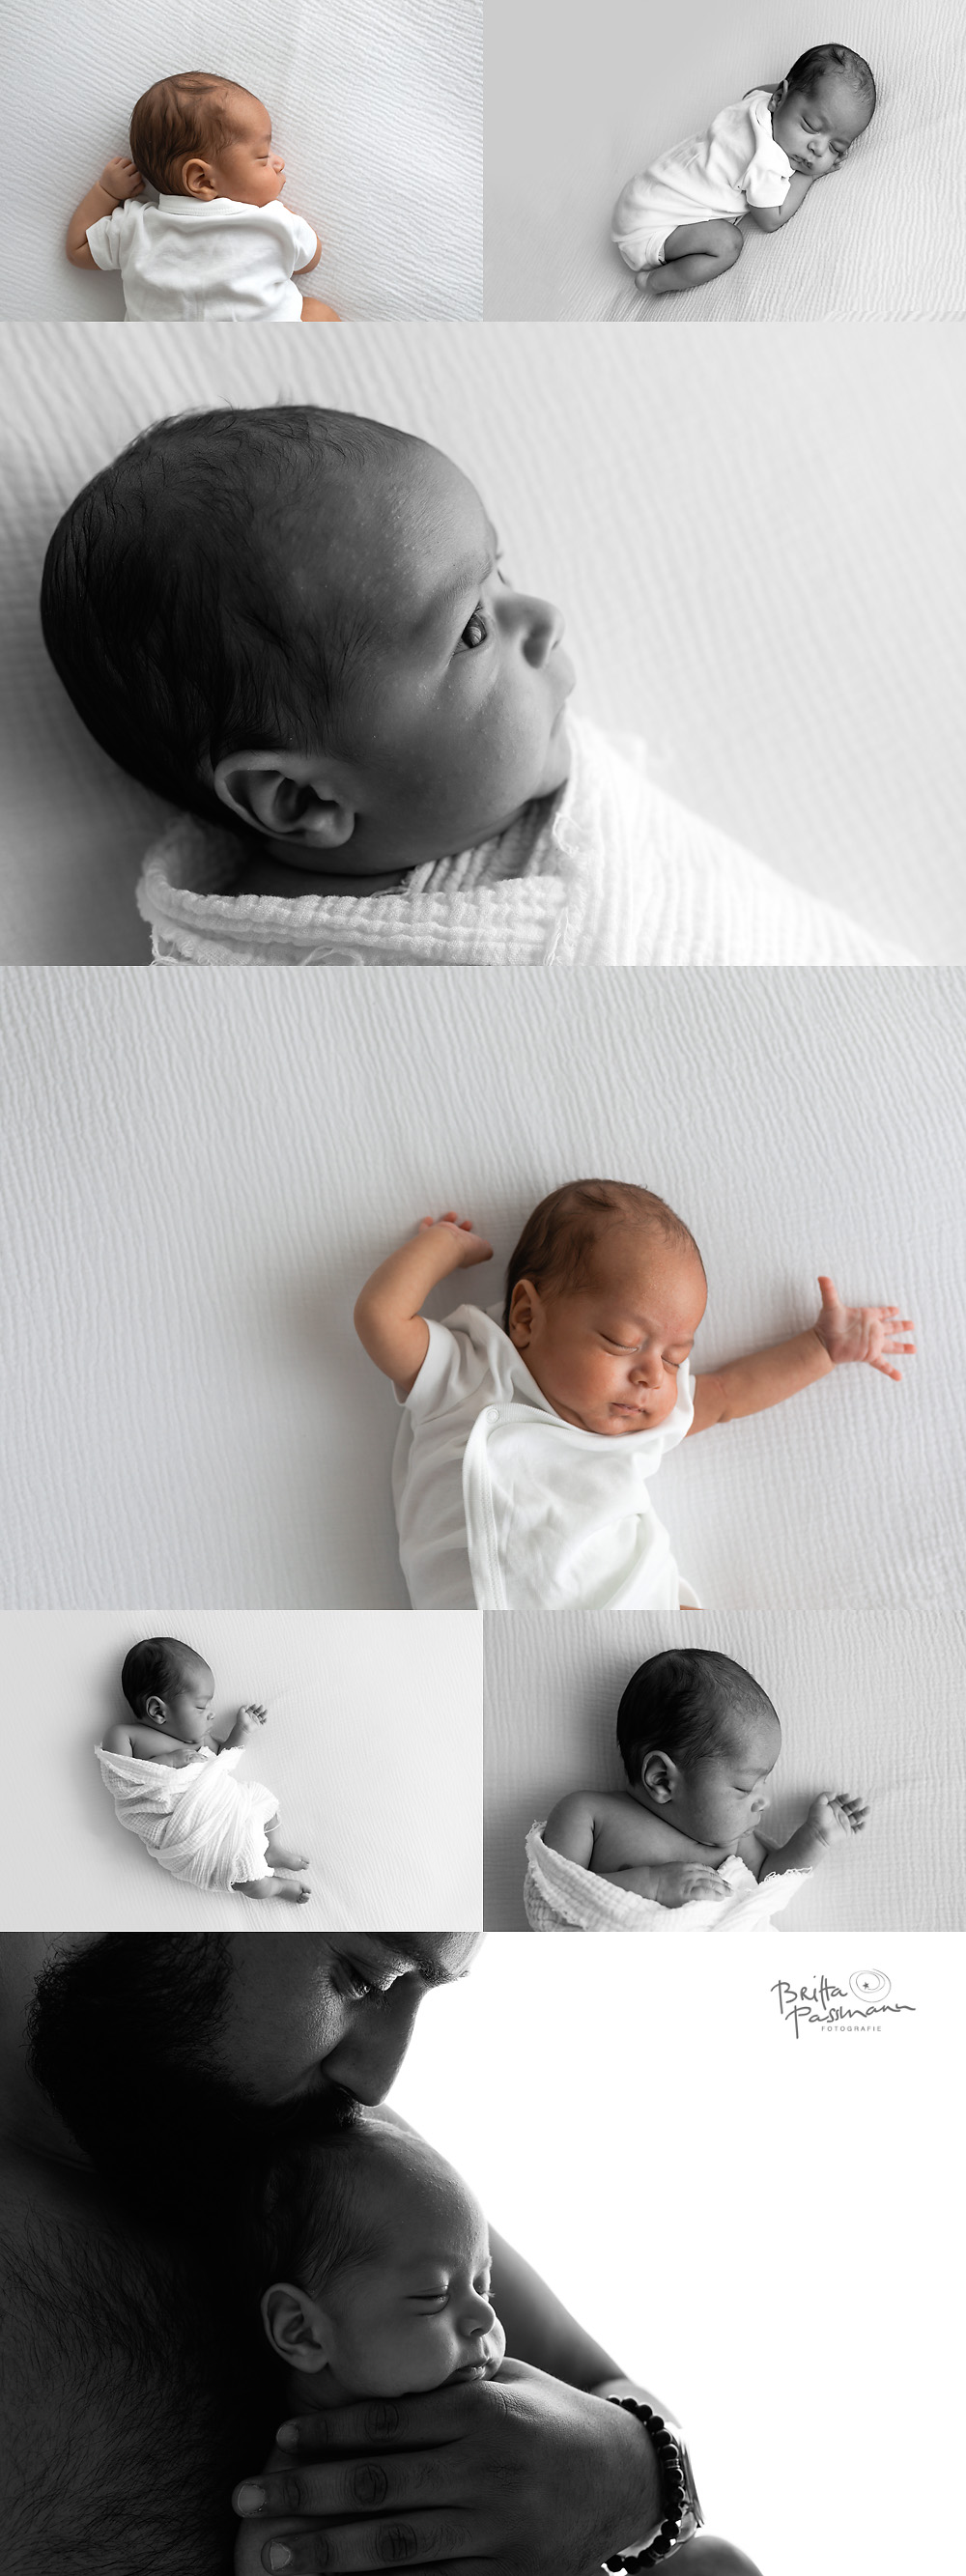 Britta Passmann Fotografie Dortmund Neugeborenenfotos Newbornfotos Babyfotos Fotoshooting